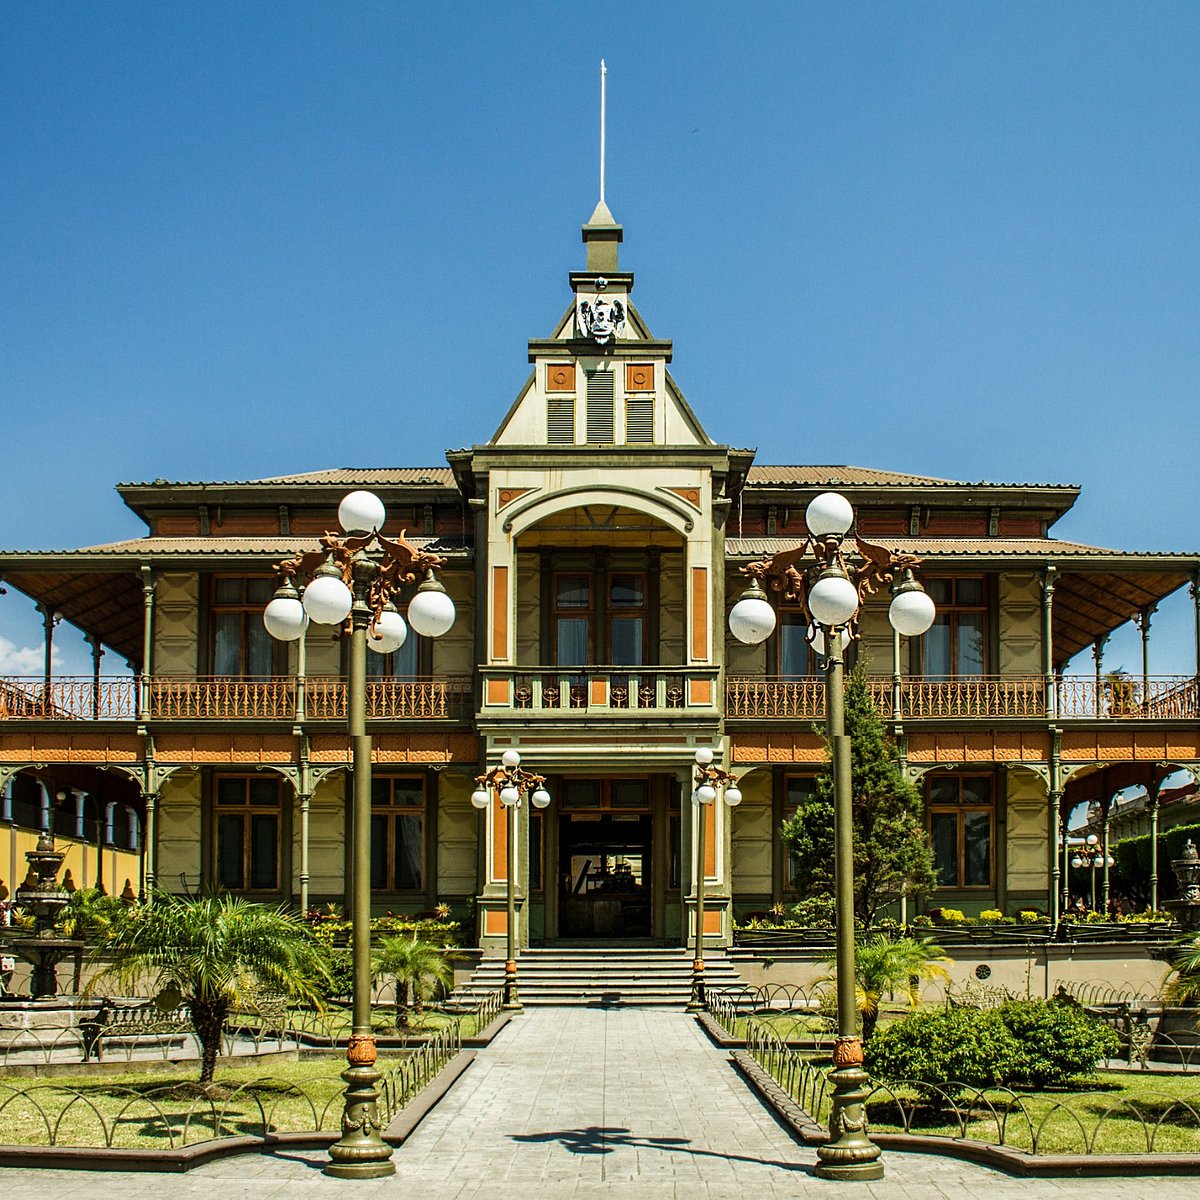 El Palacio de Hierro, Querétaro, Projects